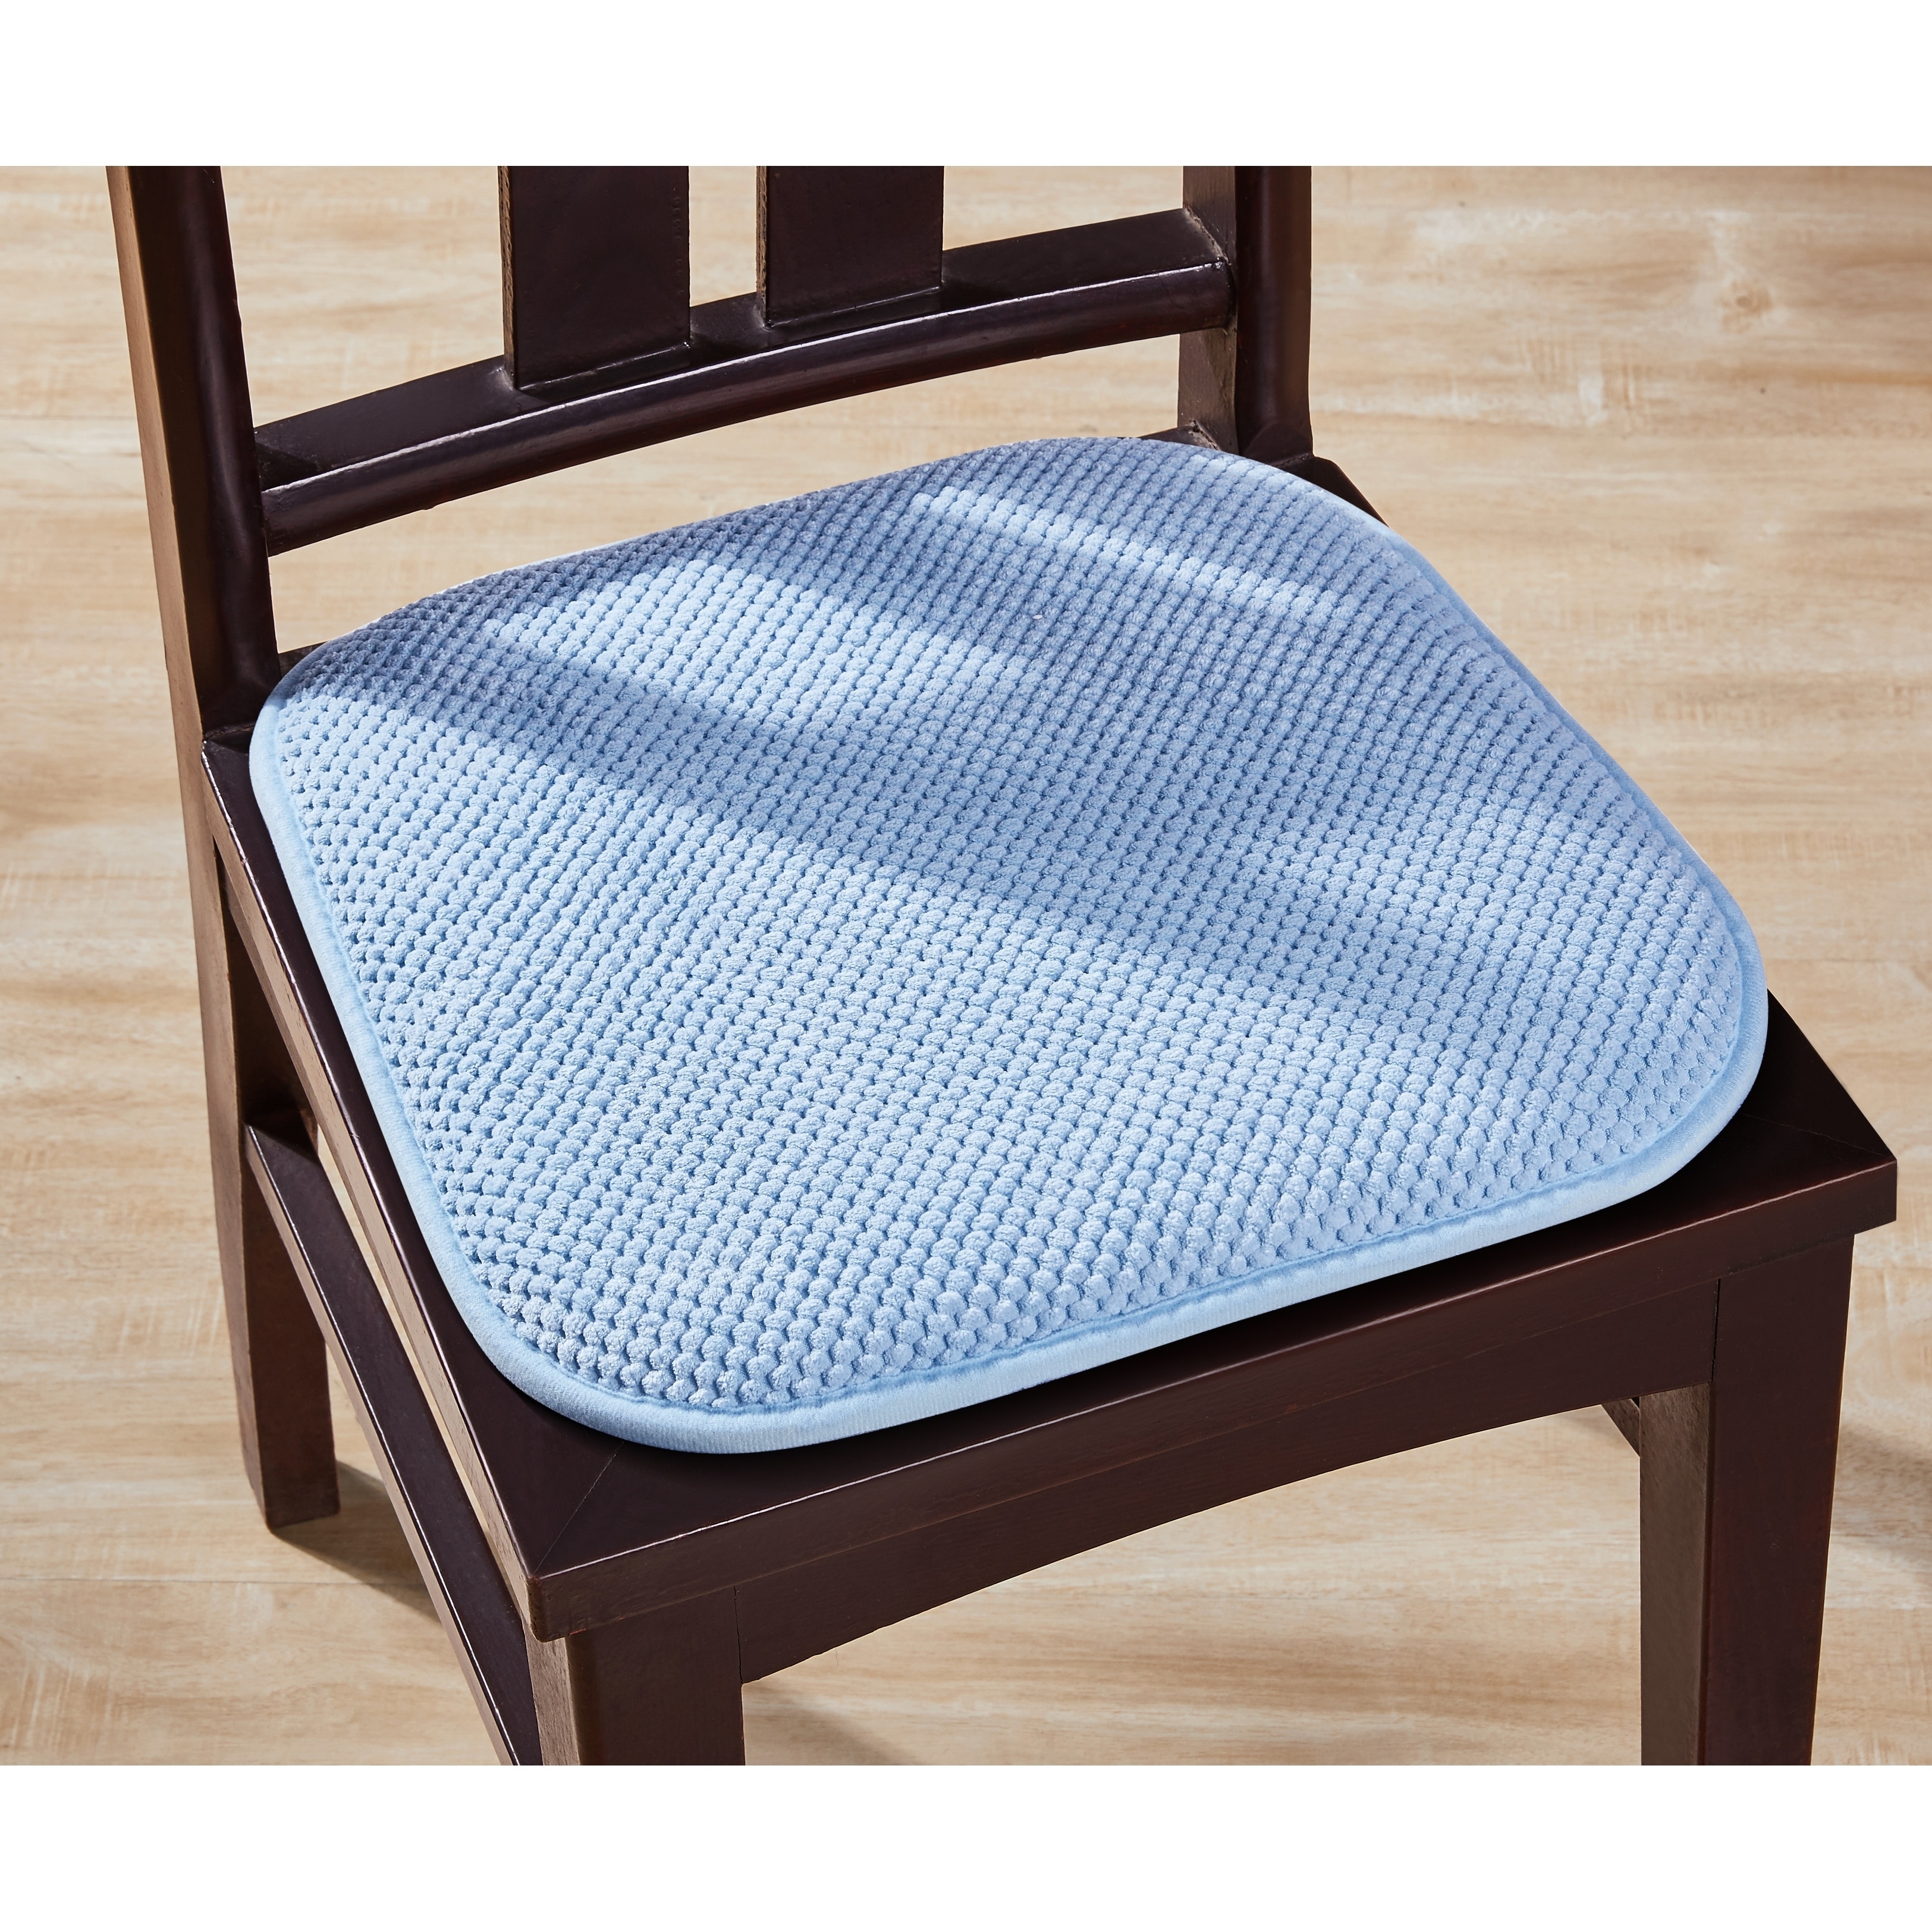 Premium Chair Cushions Memory Foam Chair Pads 2 Pack - 16x16 Inch